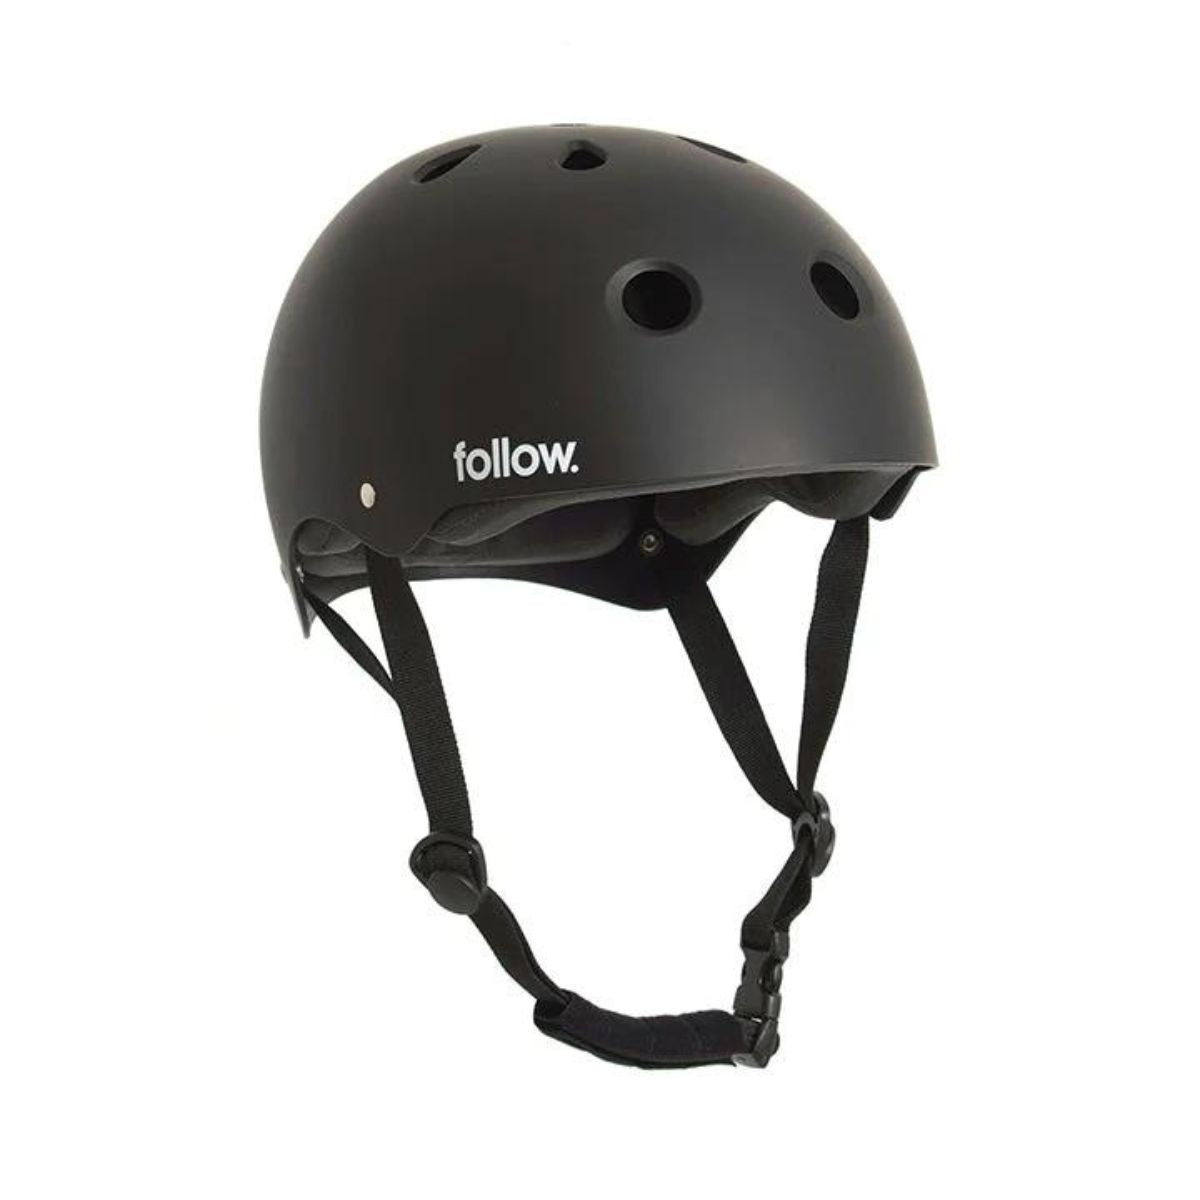 Follow Safety First Helmet in Black - BoardCo